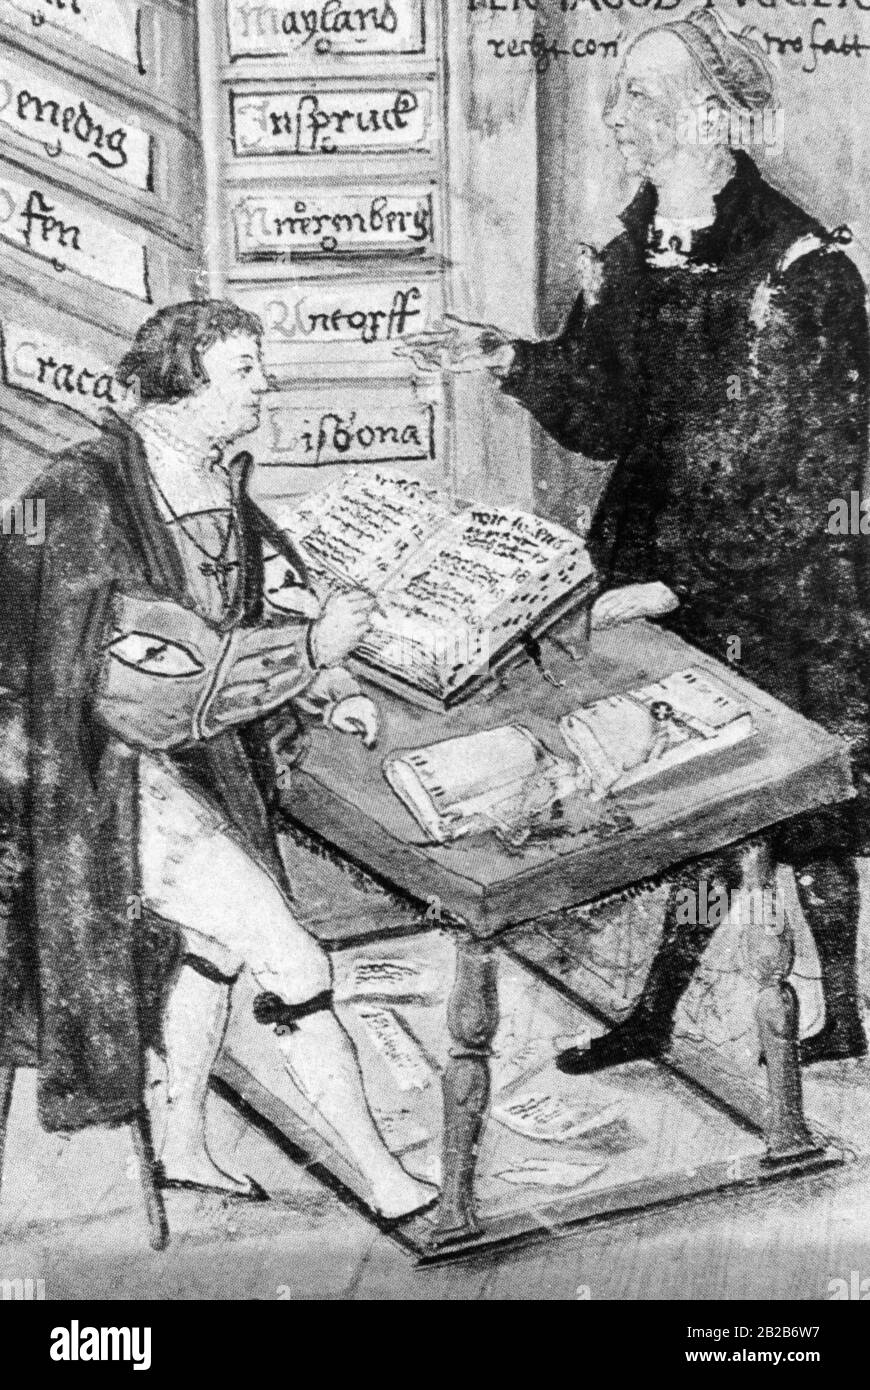 Jakob Fugger der Reiche (rechts) diktiert seinem Hauptbuchhalter (links) etwas, der es aufschreibt. Im Hintergrund stehen Schubladen, auf denen verschiedene Stadtnamen geschrieben sind. Stockfoto